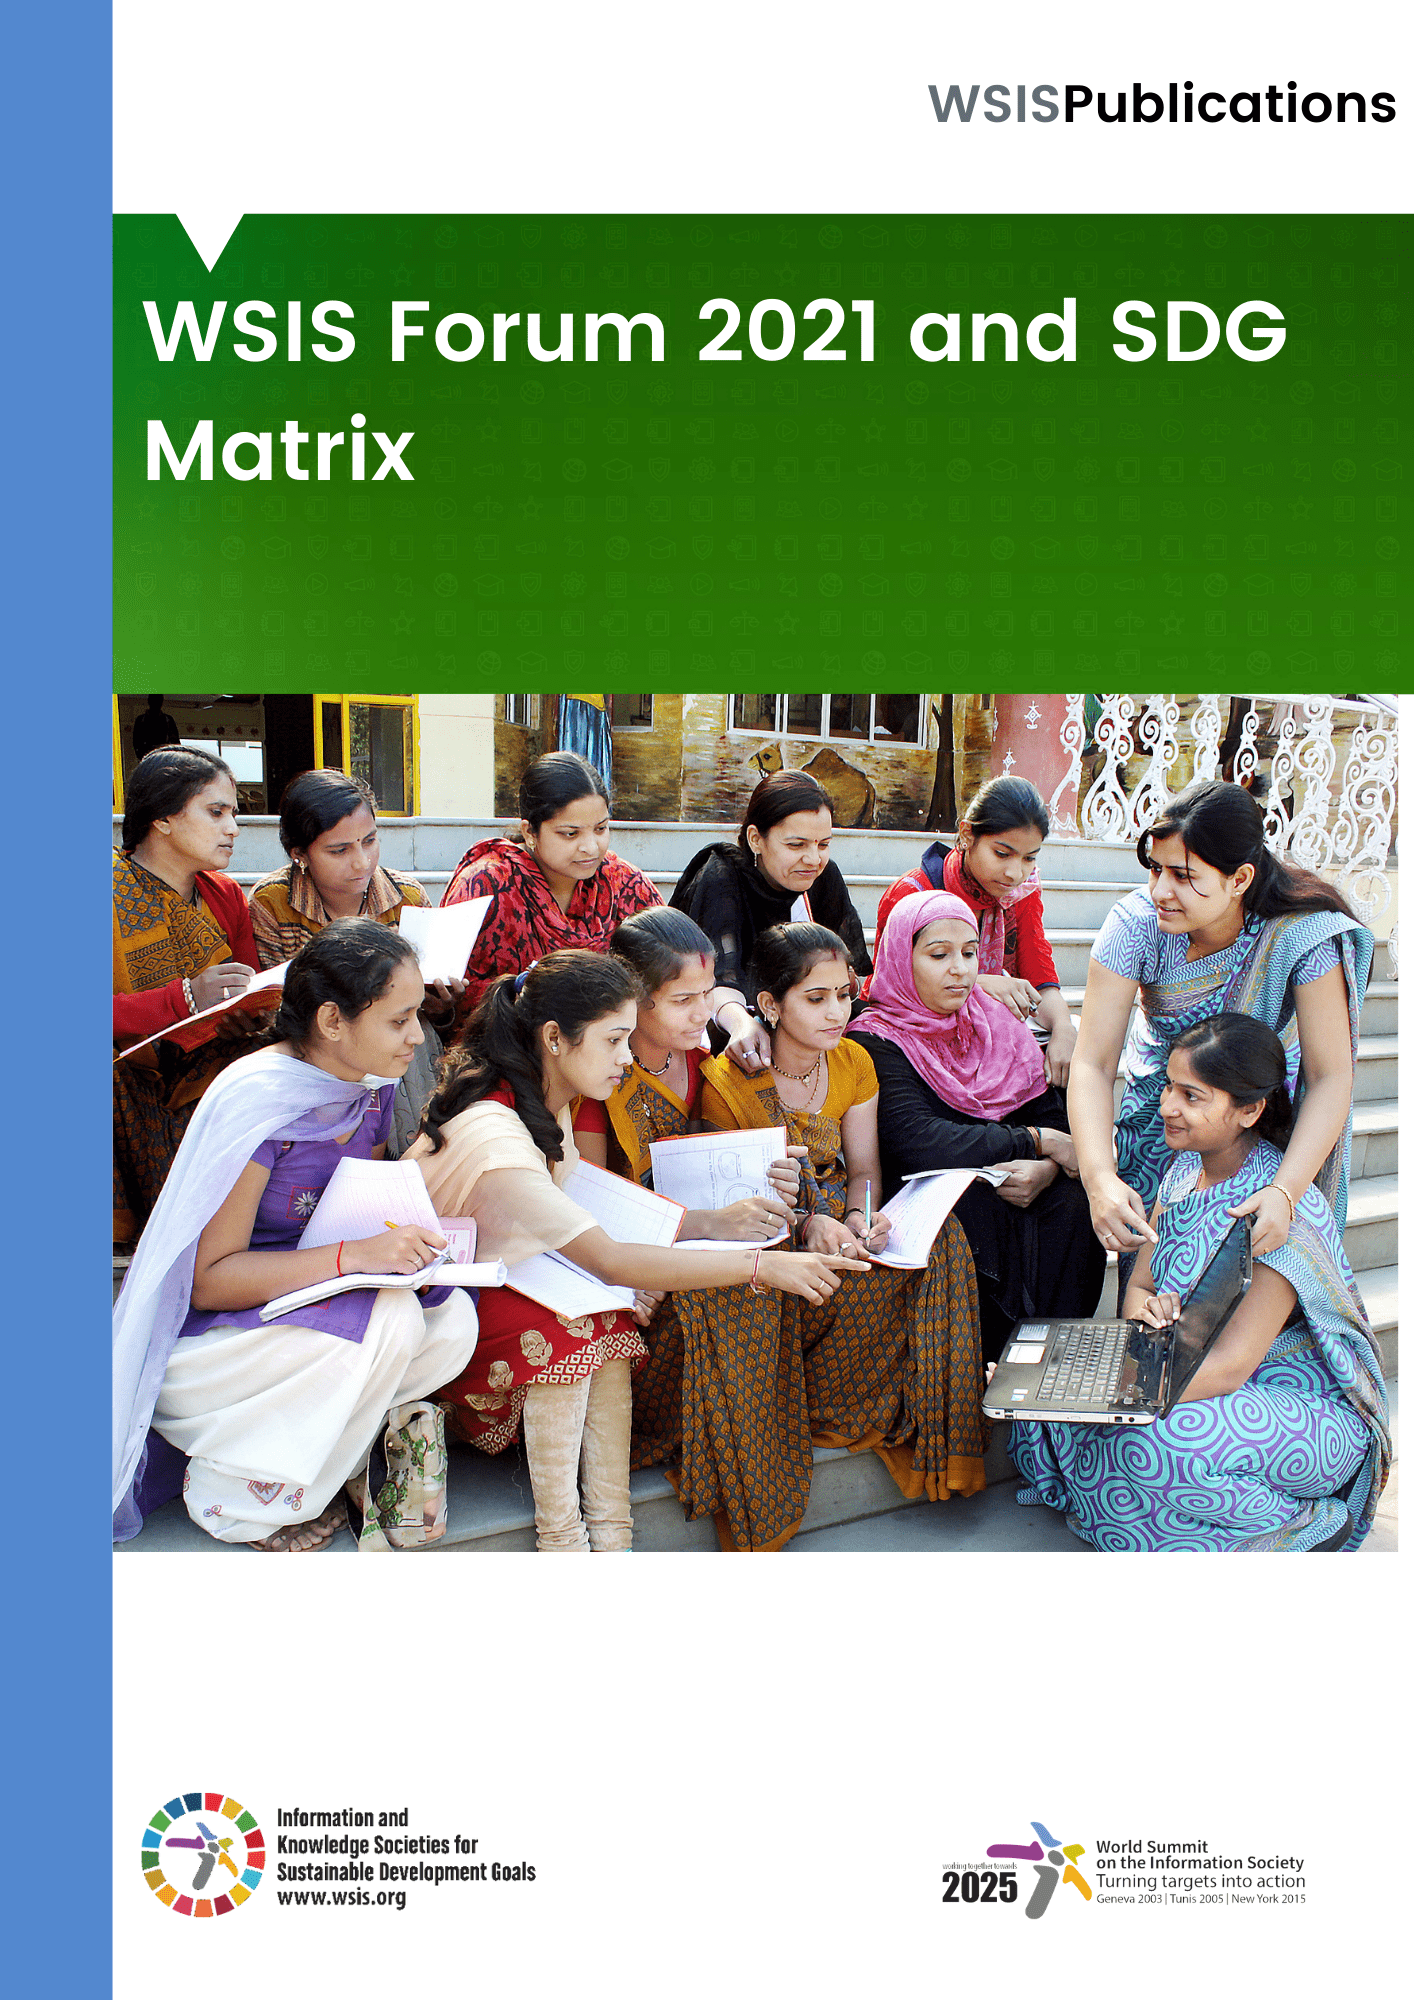 WSIS论坛2021和SDG矩阵